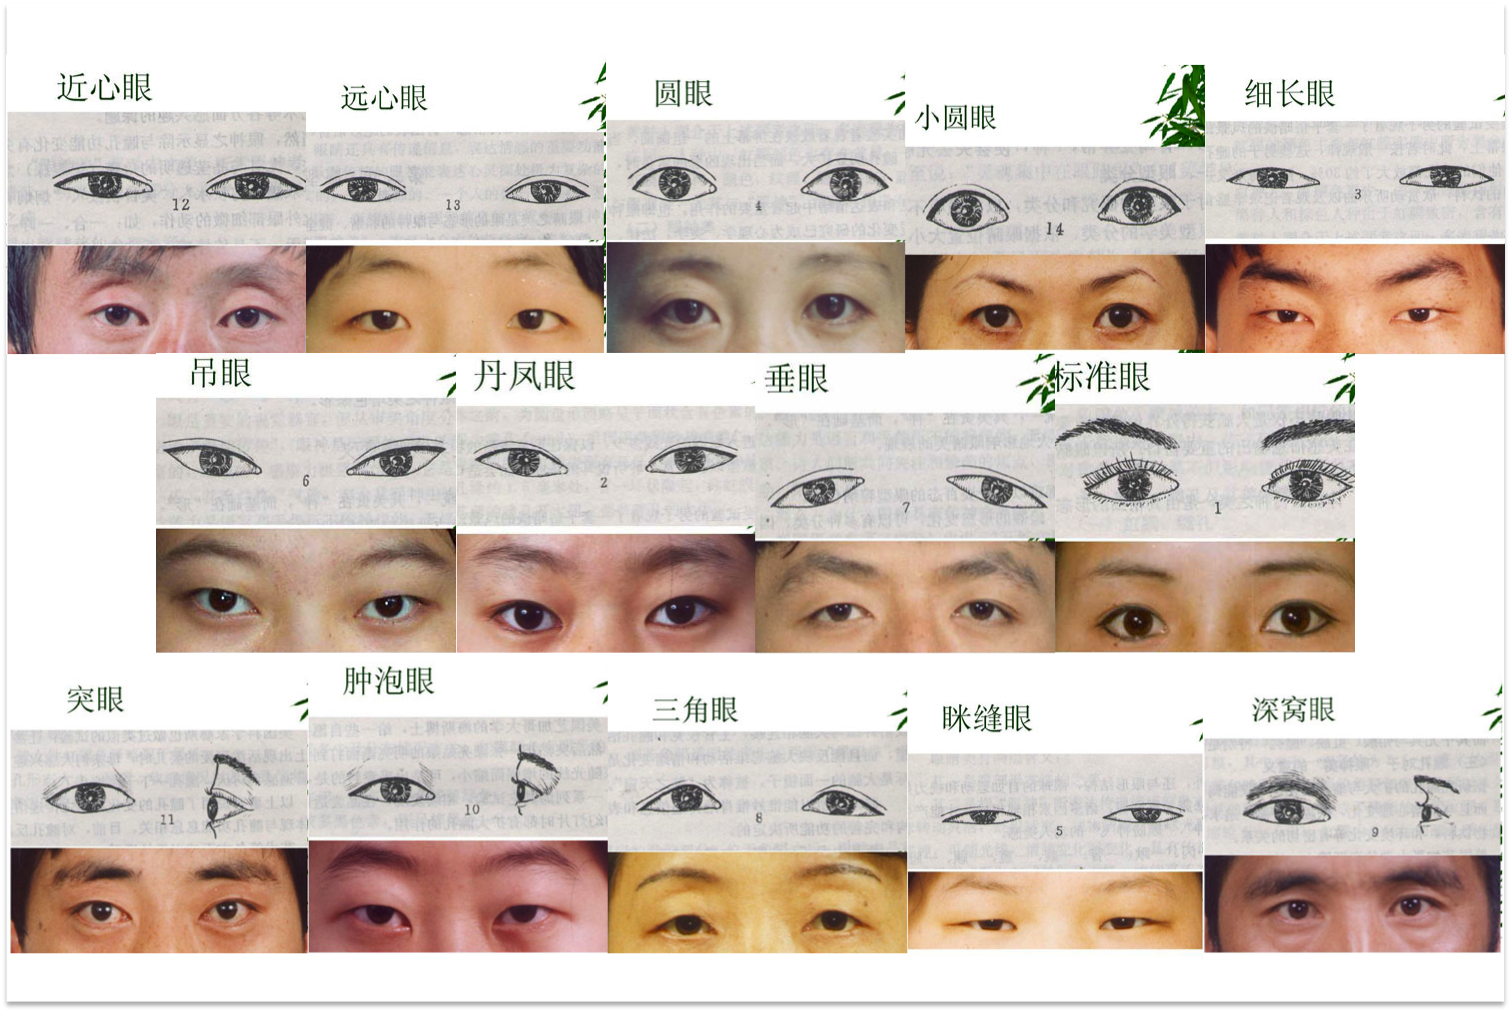 Виды век. Разрез глаз у разных наций. Разрезы глаза по национальности. Типы глаз азиатов. Разрезы глаз разных народностей.